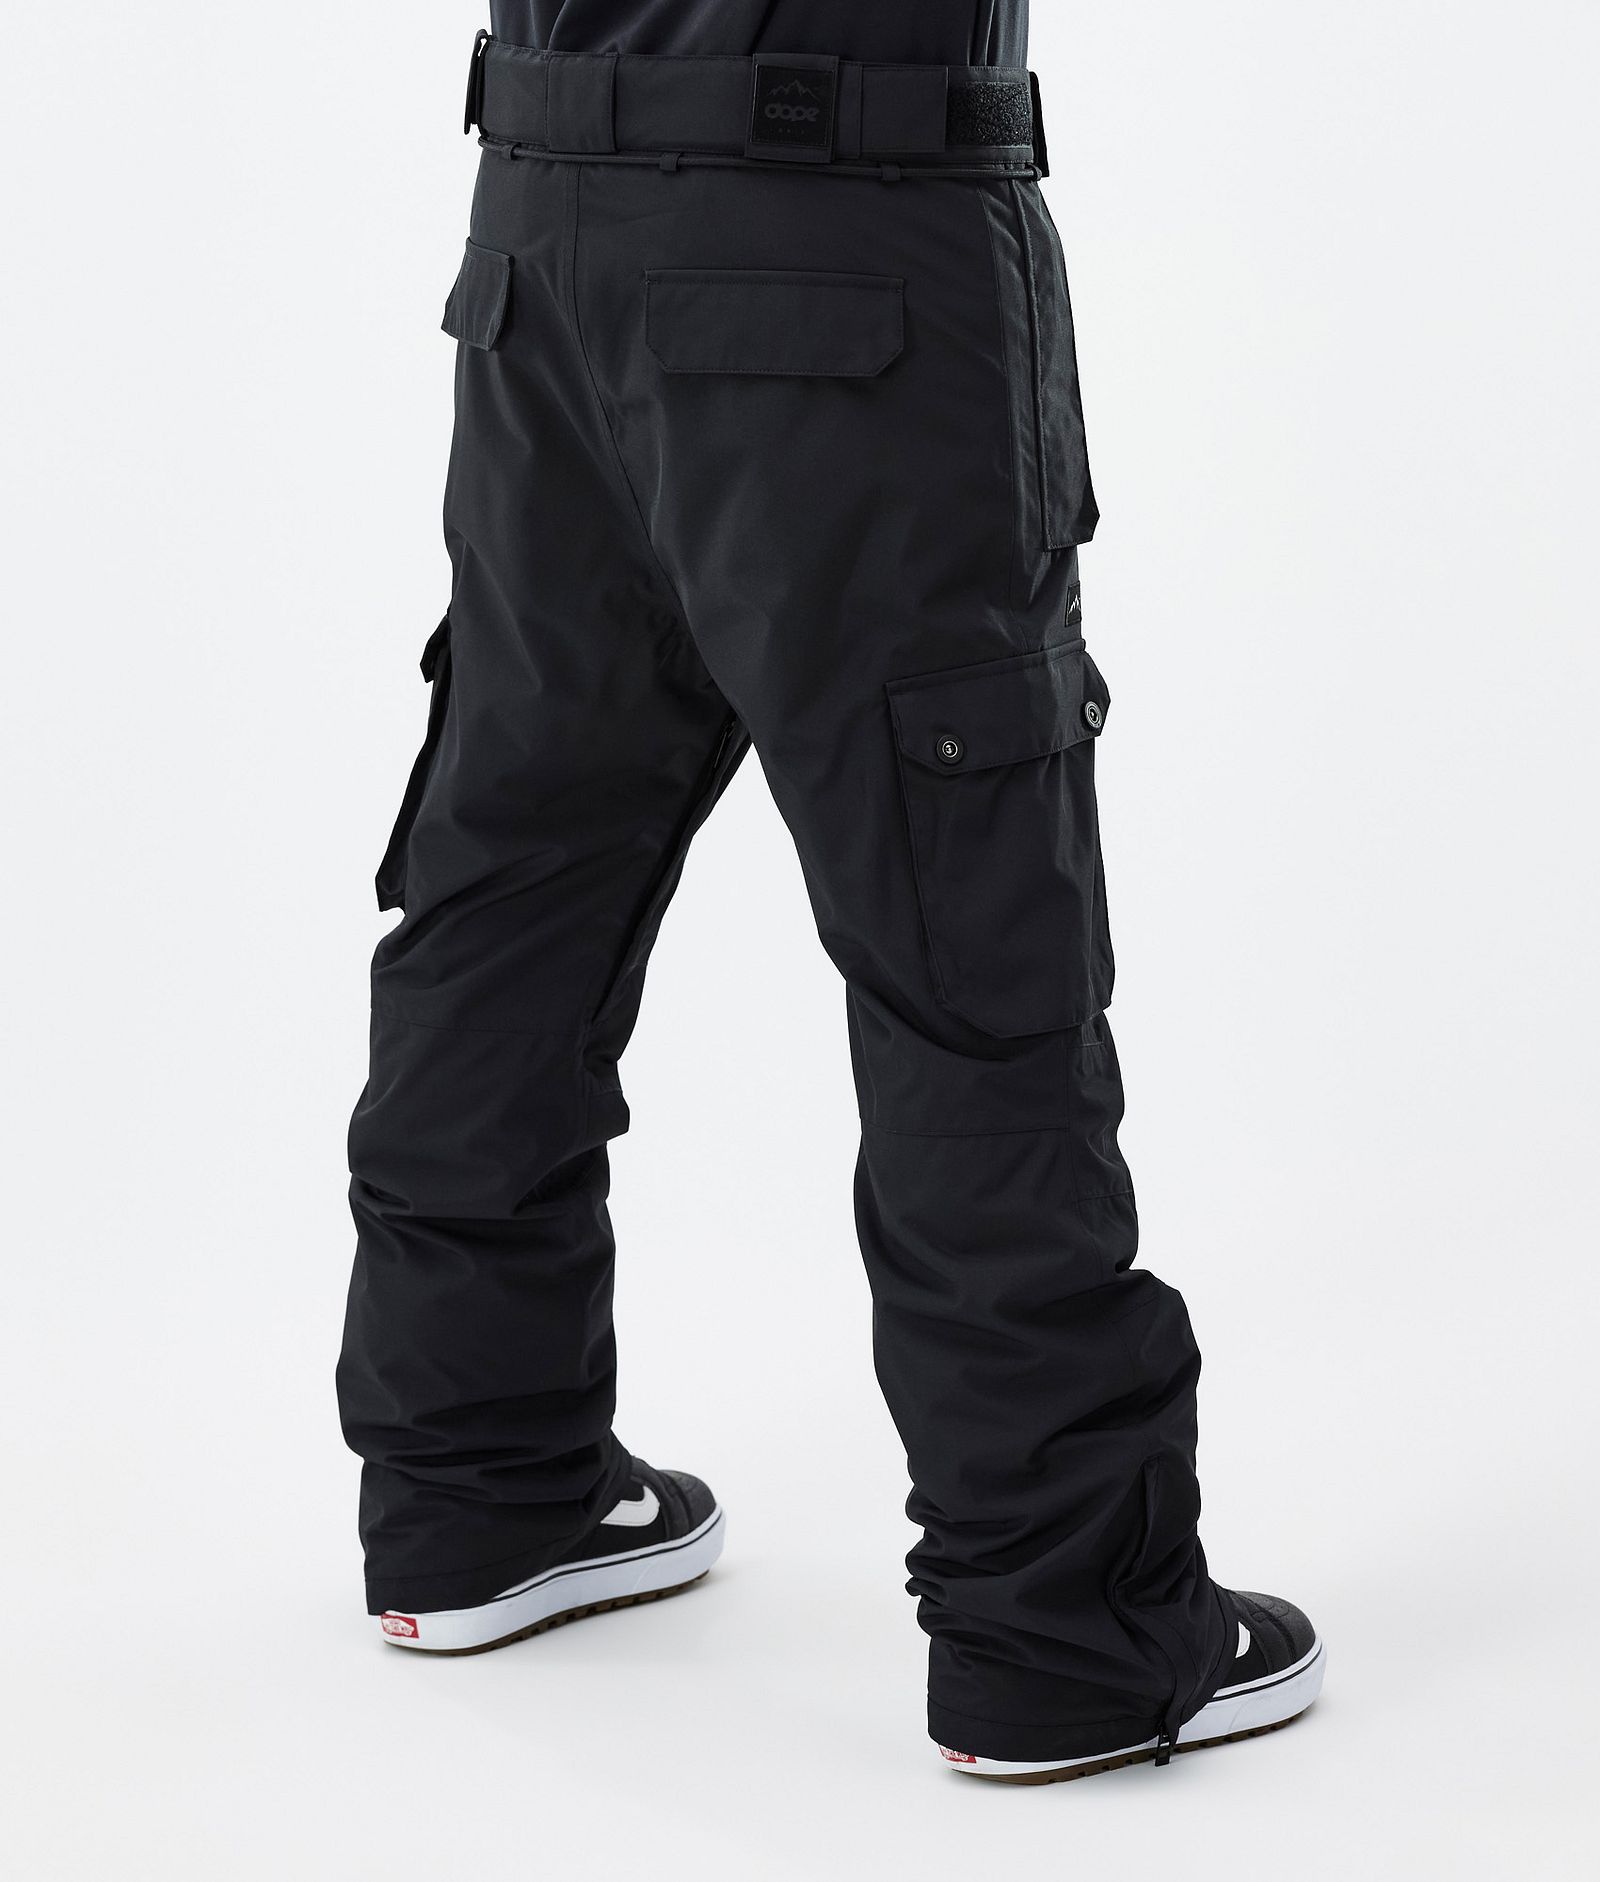 Dope Snuggle Pantalon thermique Homme 2X-Up Black - Noir